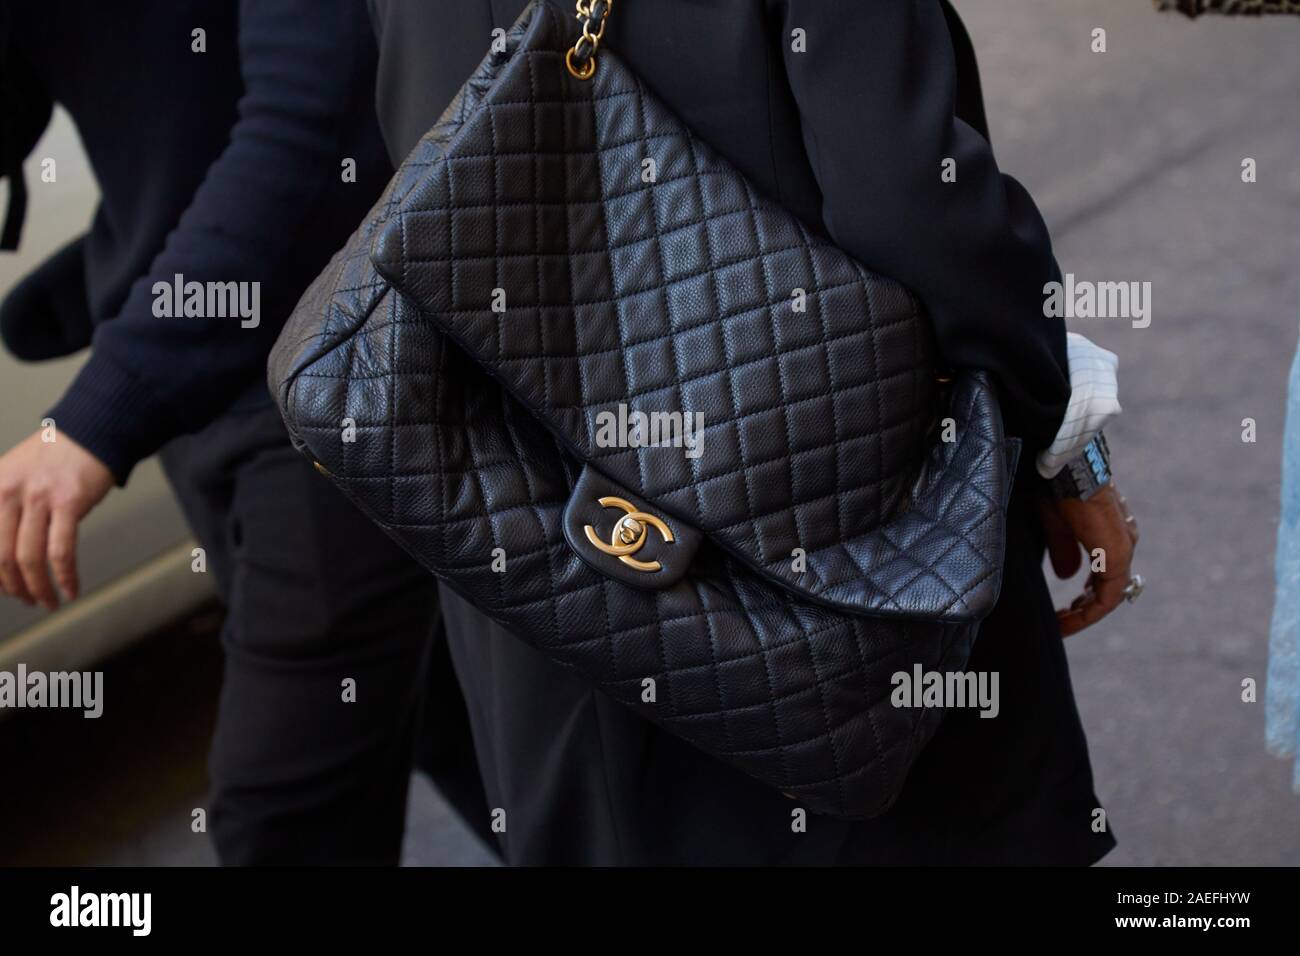 Mailand, Italien - 21 SEPTEMBER 2019: Frau mit großen schwarzen Leder  Chanel Tasche, bevor Ermanno Scervino fashion show, Mailand Fashion Week  street style Stockfotografie - Alamy